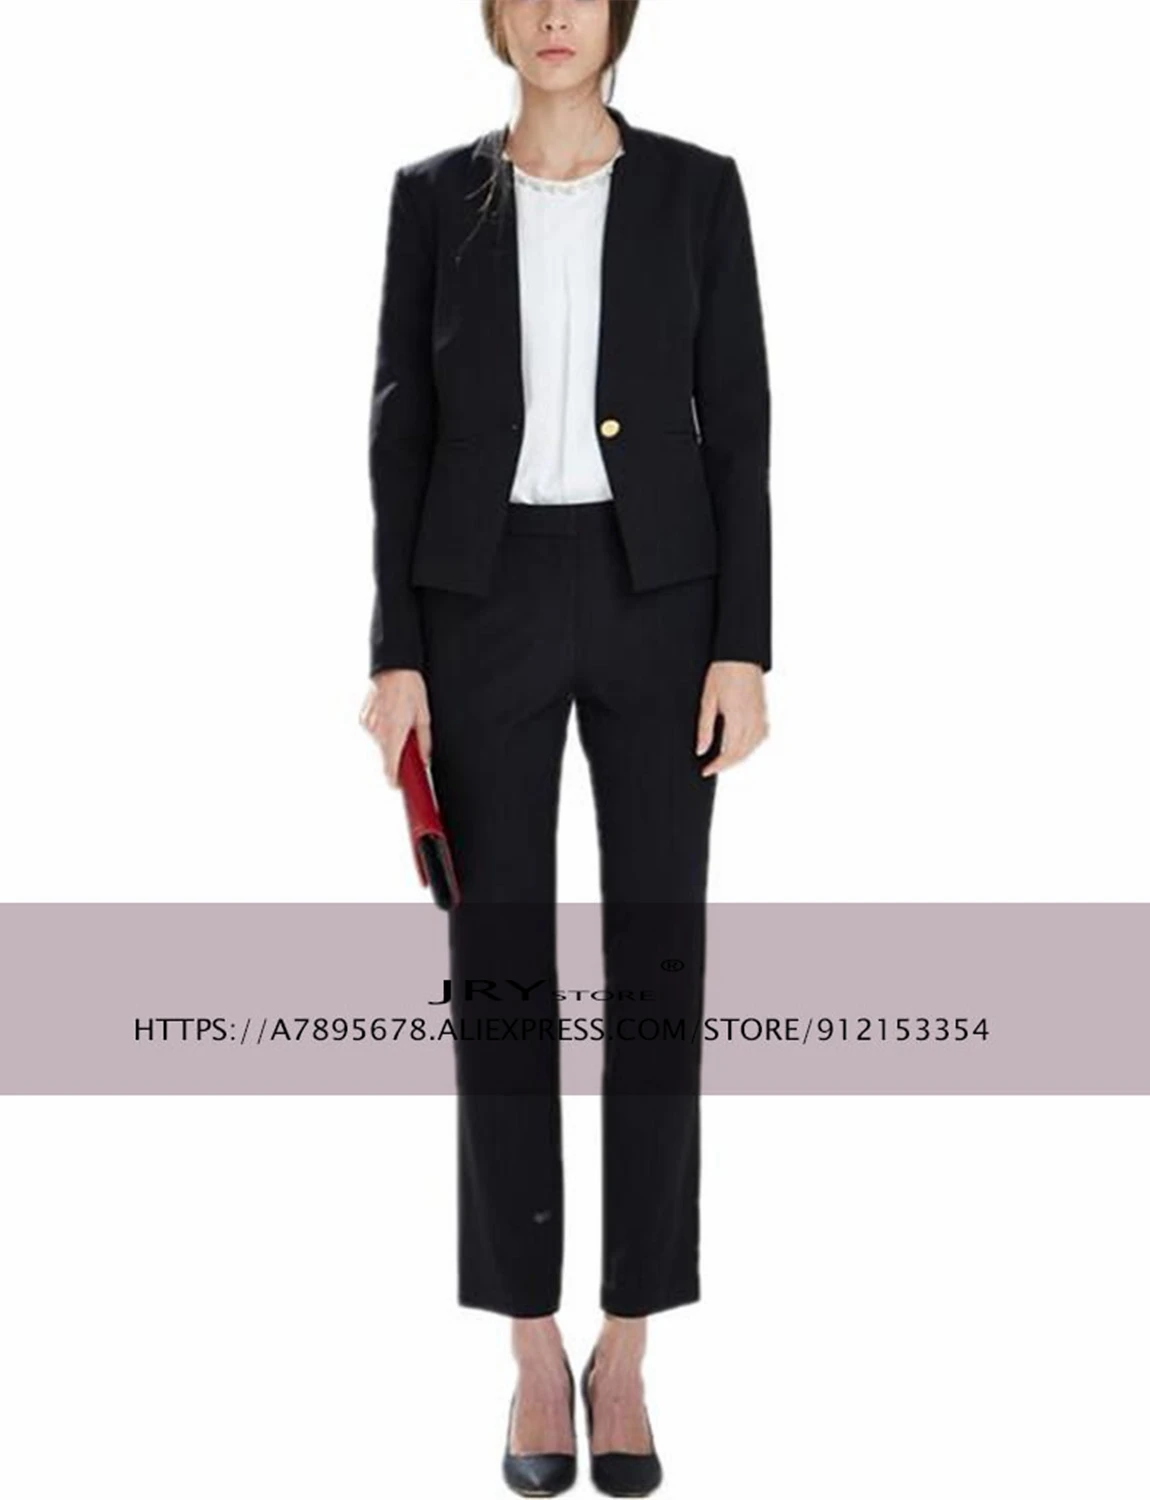 Women's suit 2-piece suit Business Slim Fit Work Wear Office Professional Jacket Blazer + Pants Set